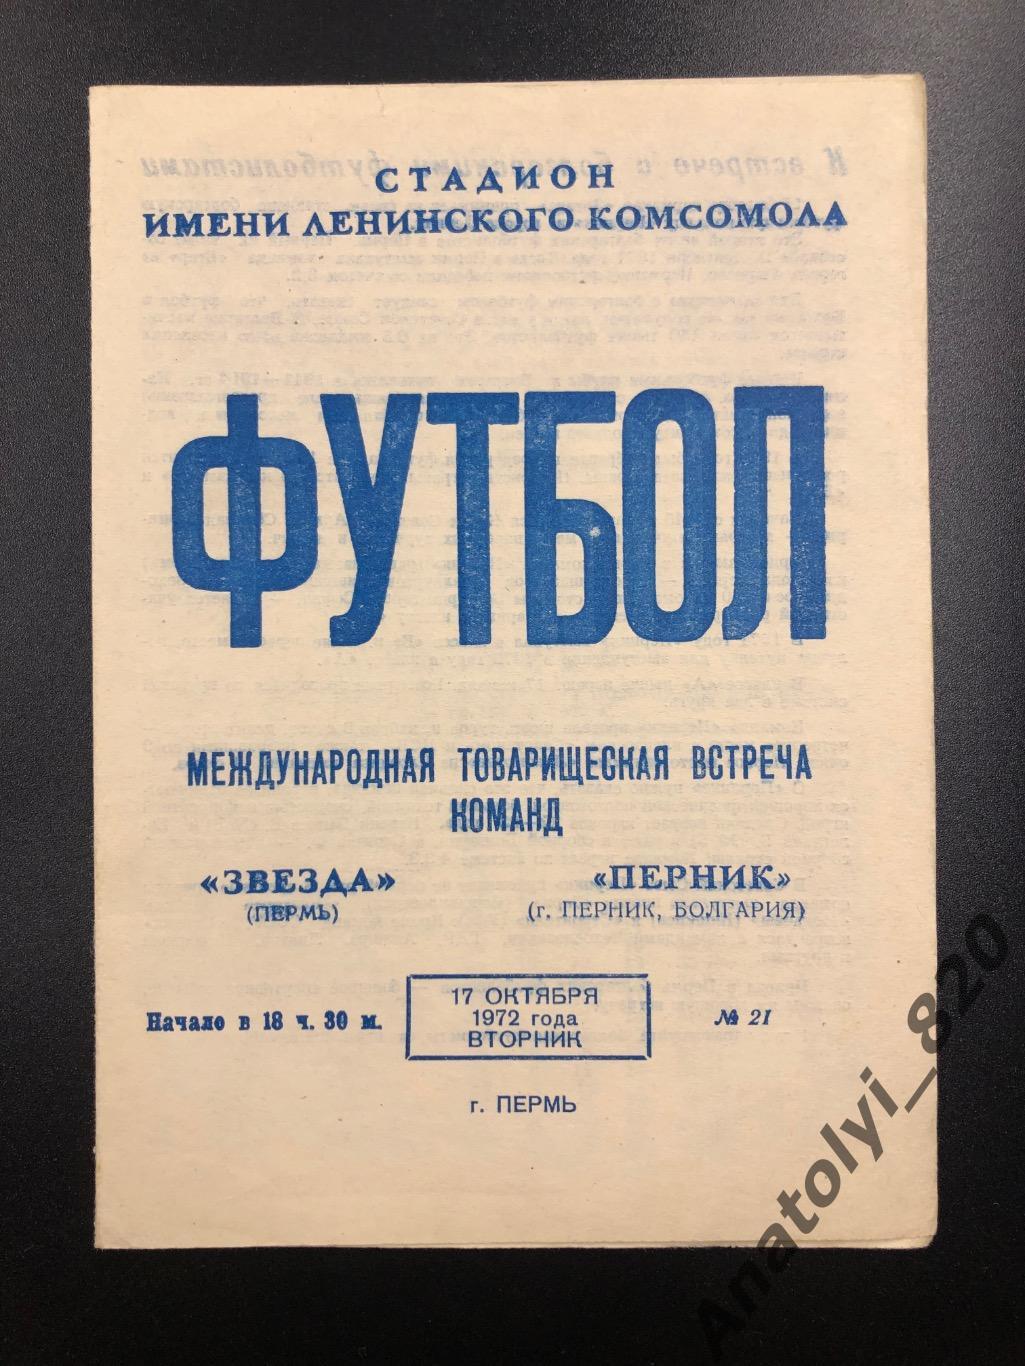 Звезда Пермь - Перник Болгария, 17.10.1972, товарищеский матч